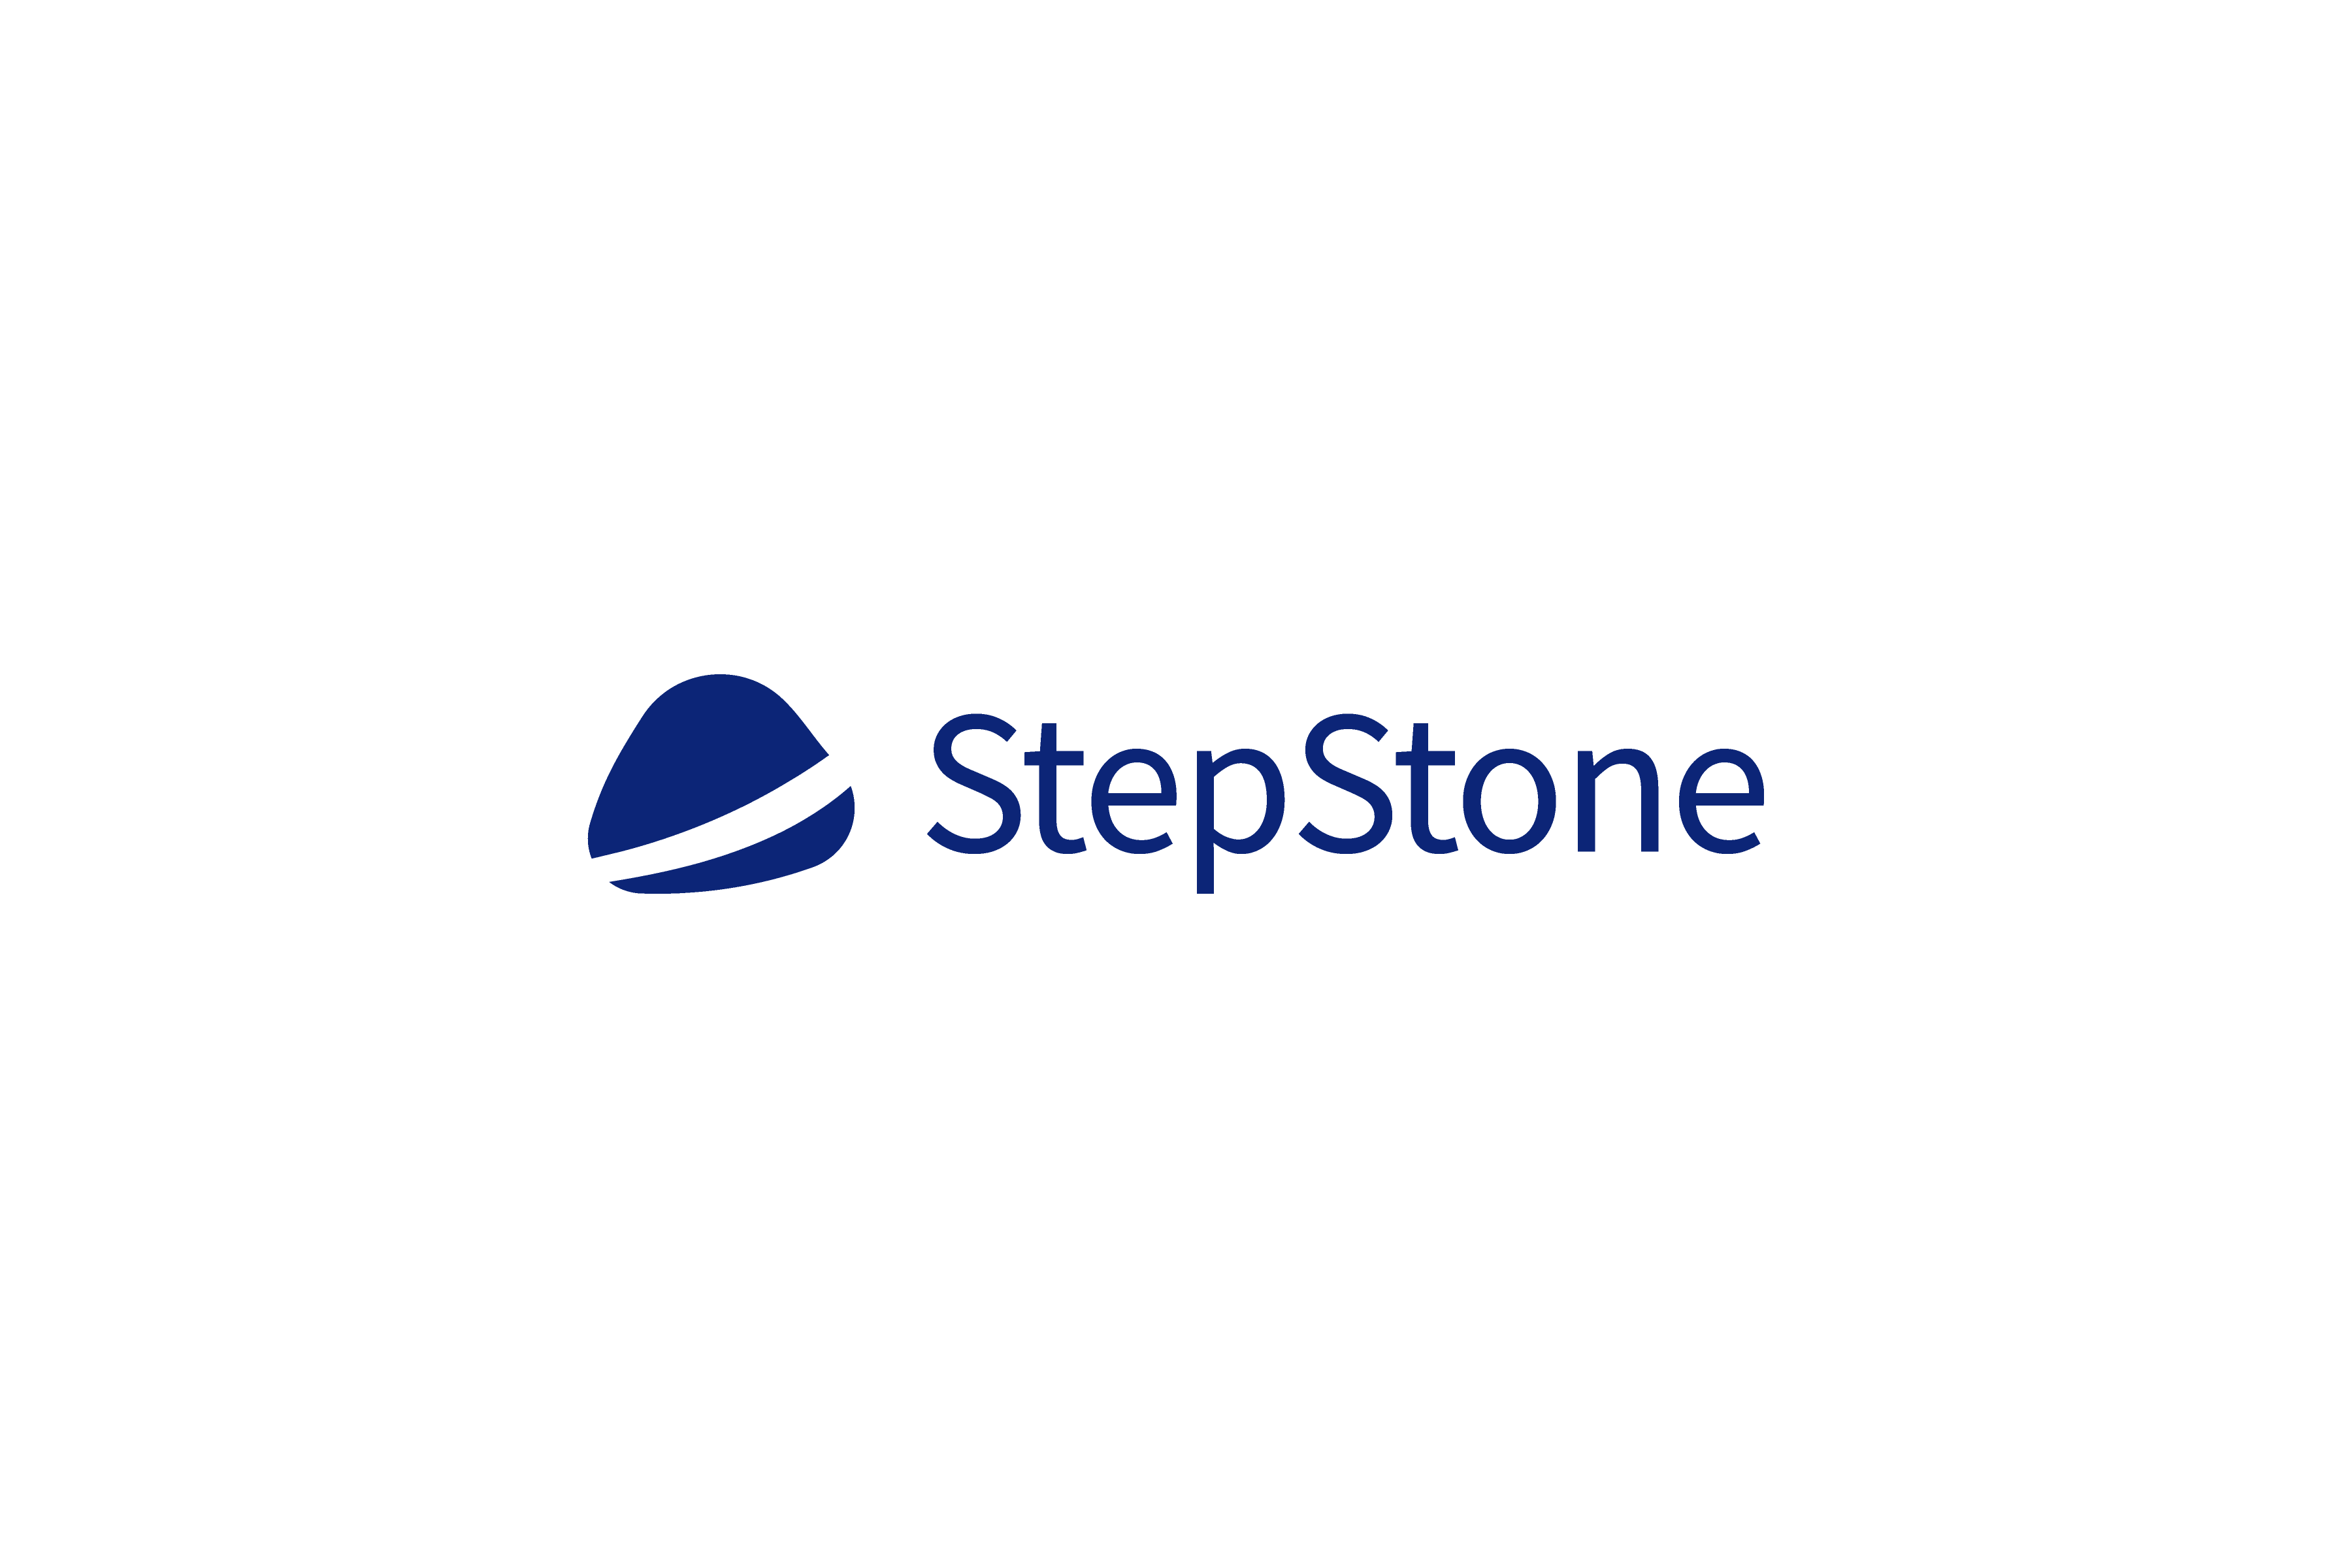 StepStone, Step Stone, StepStone Jobbörse